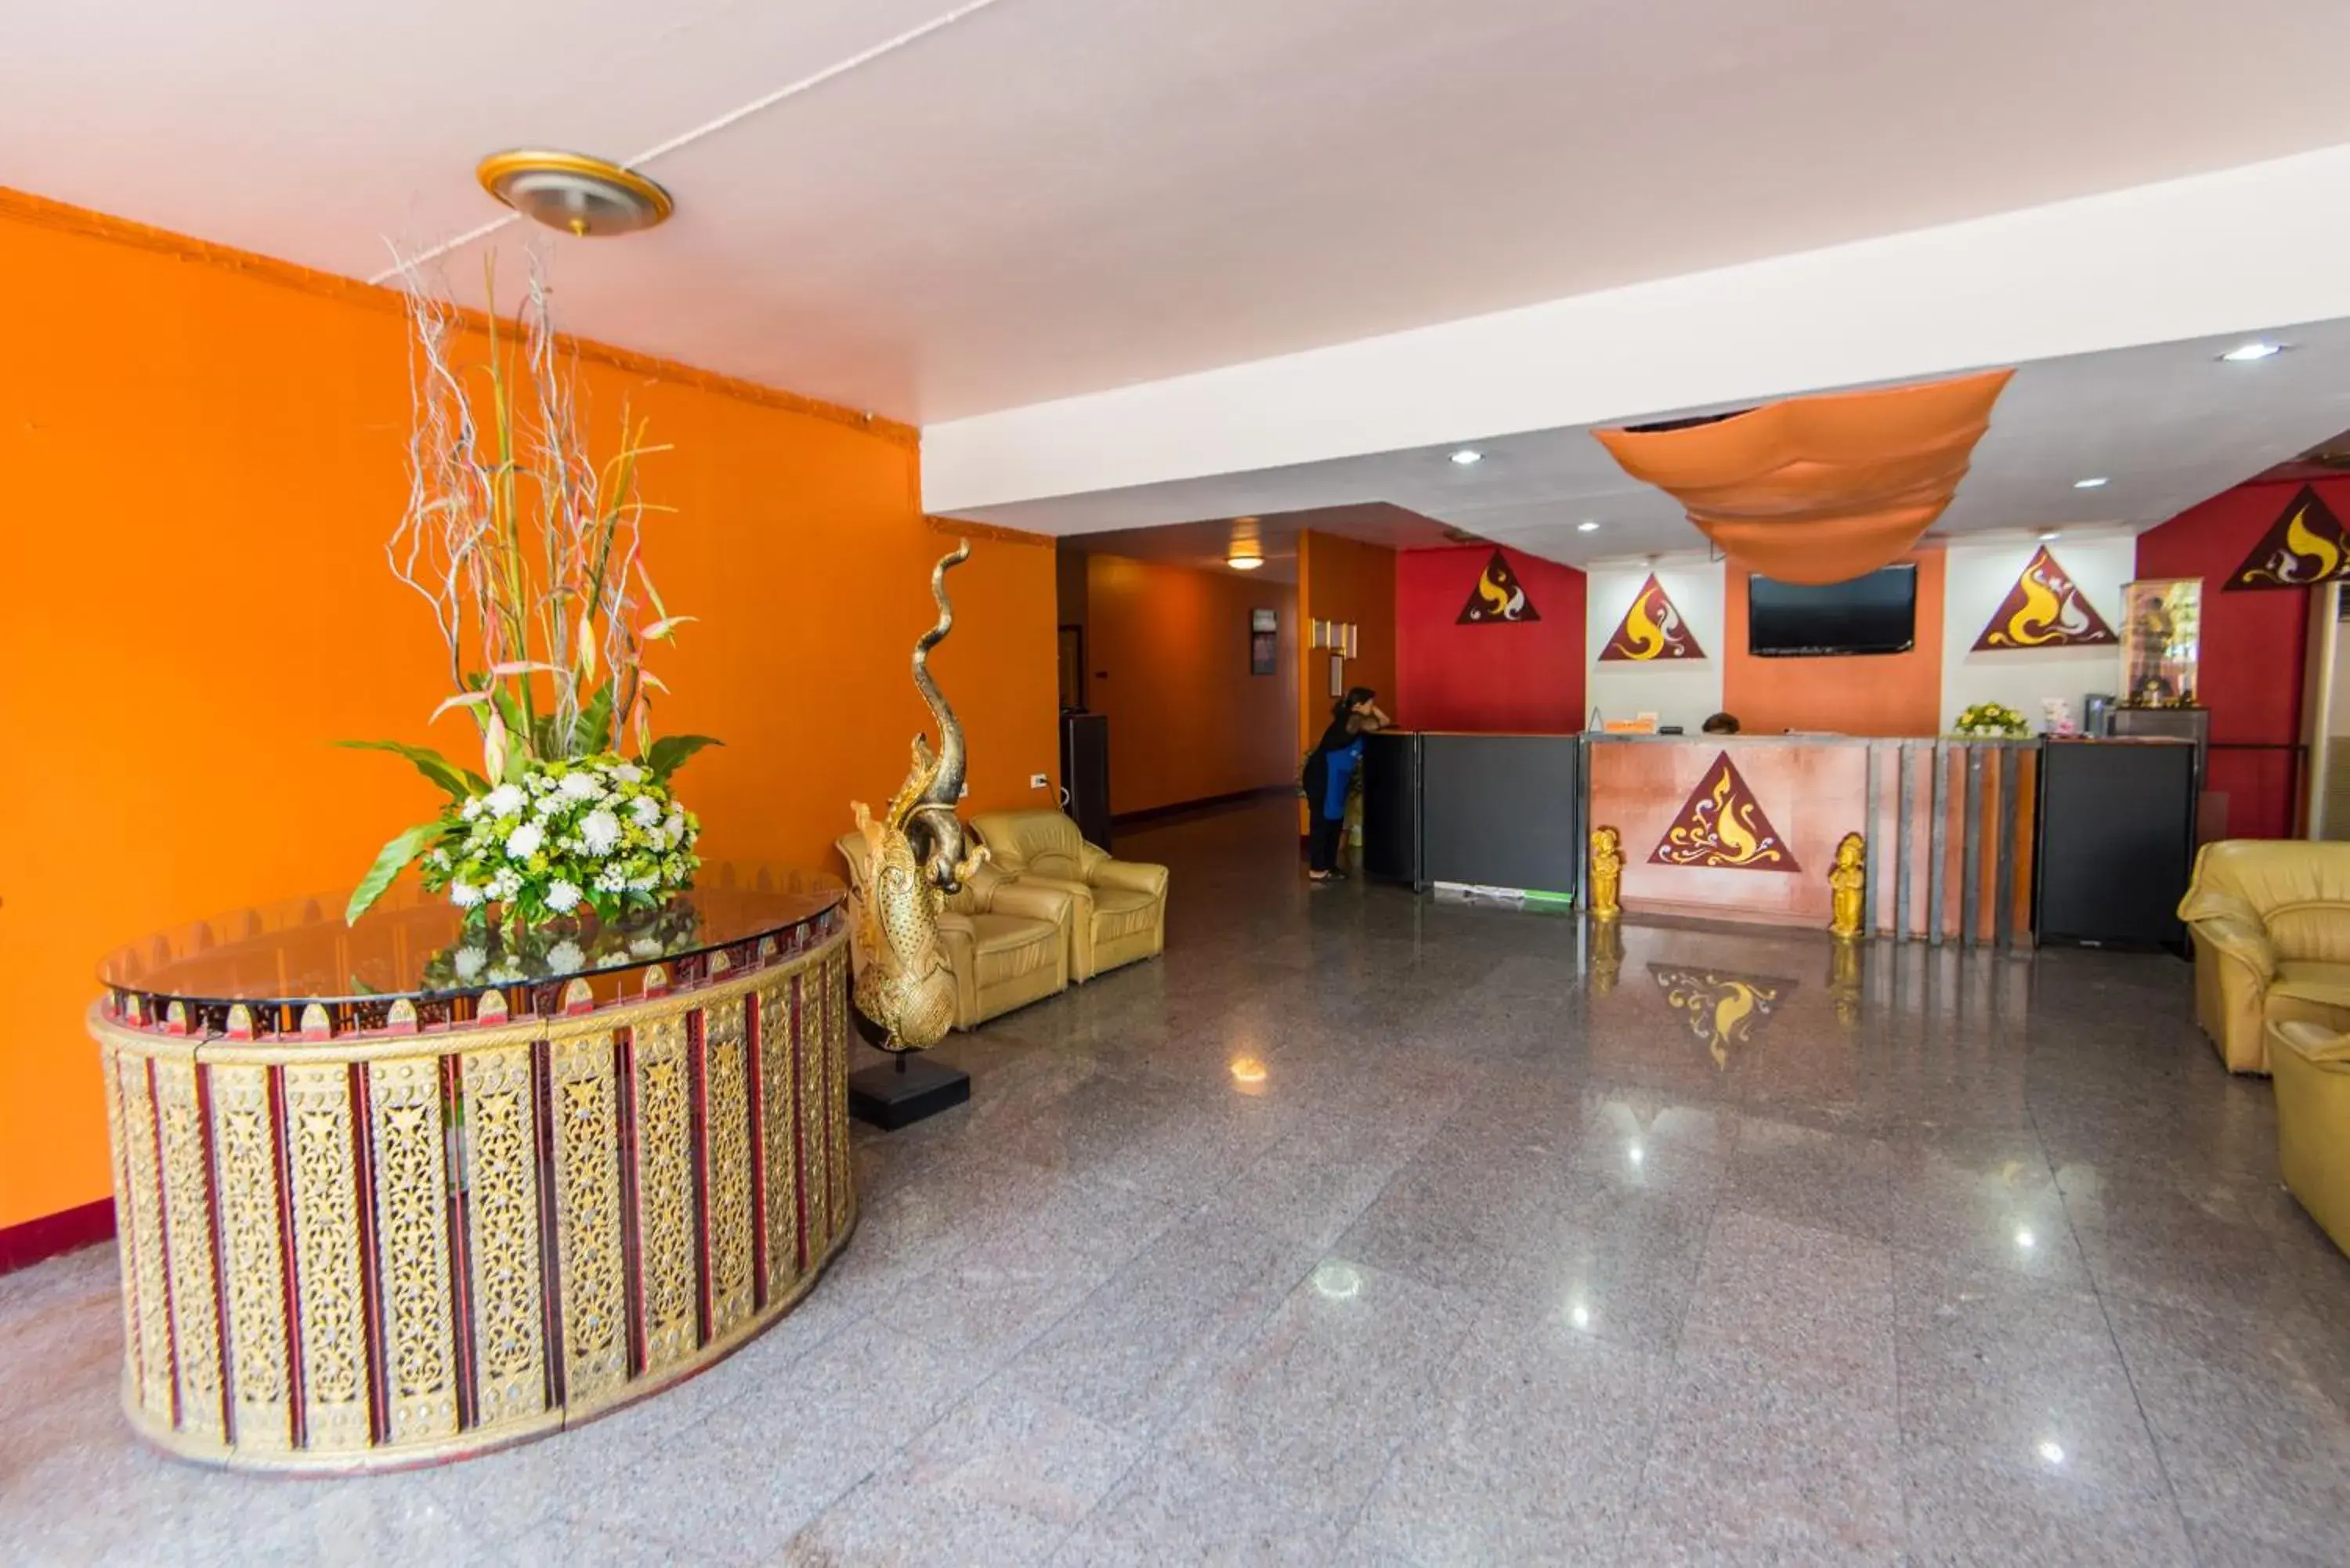 Lobby or reception, Lobby/Reception in King Royal II Hotel